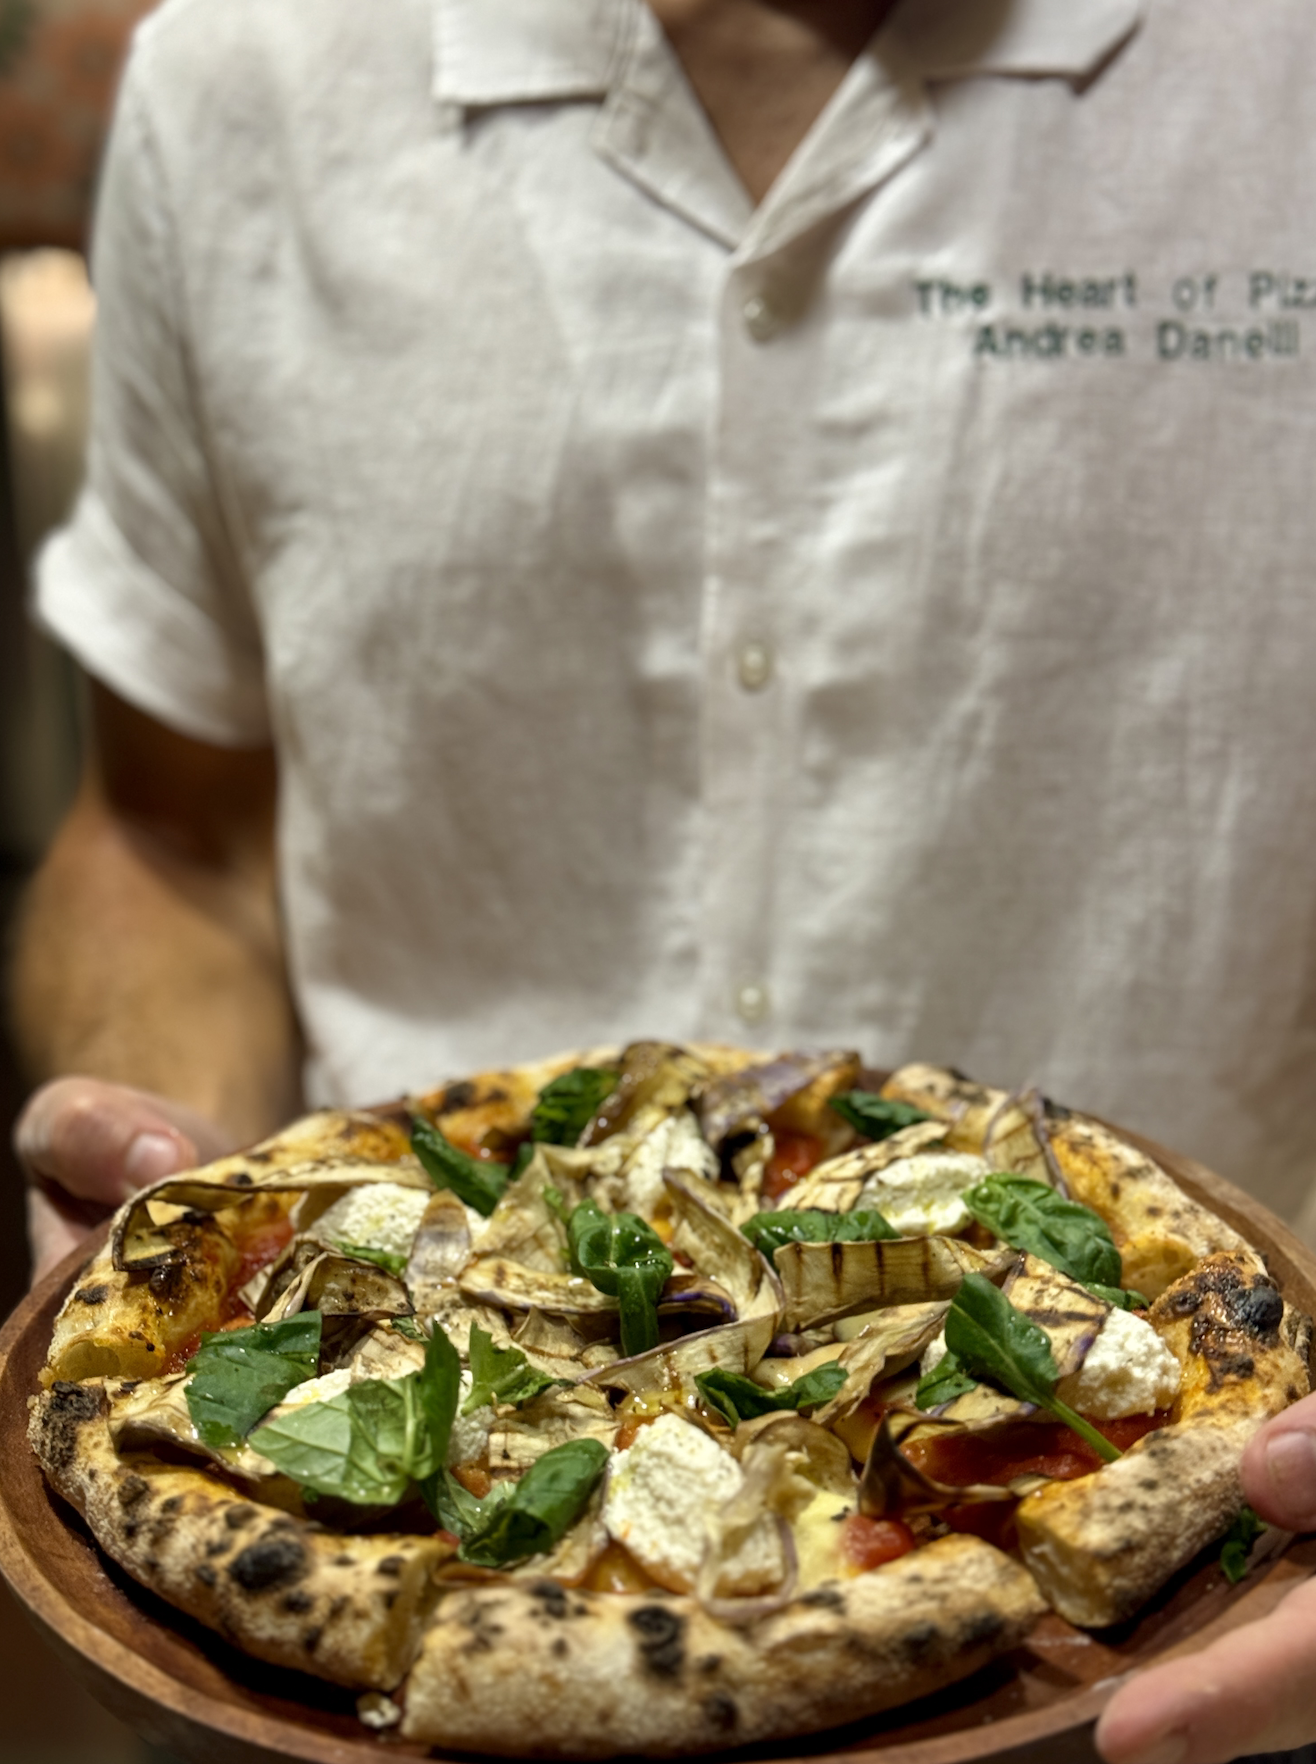 sourdough pizza expert consultant recipe creator chef andrea danelli from sri lanka england italy europe @theheartofpizza on instagram social media 12